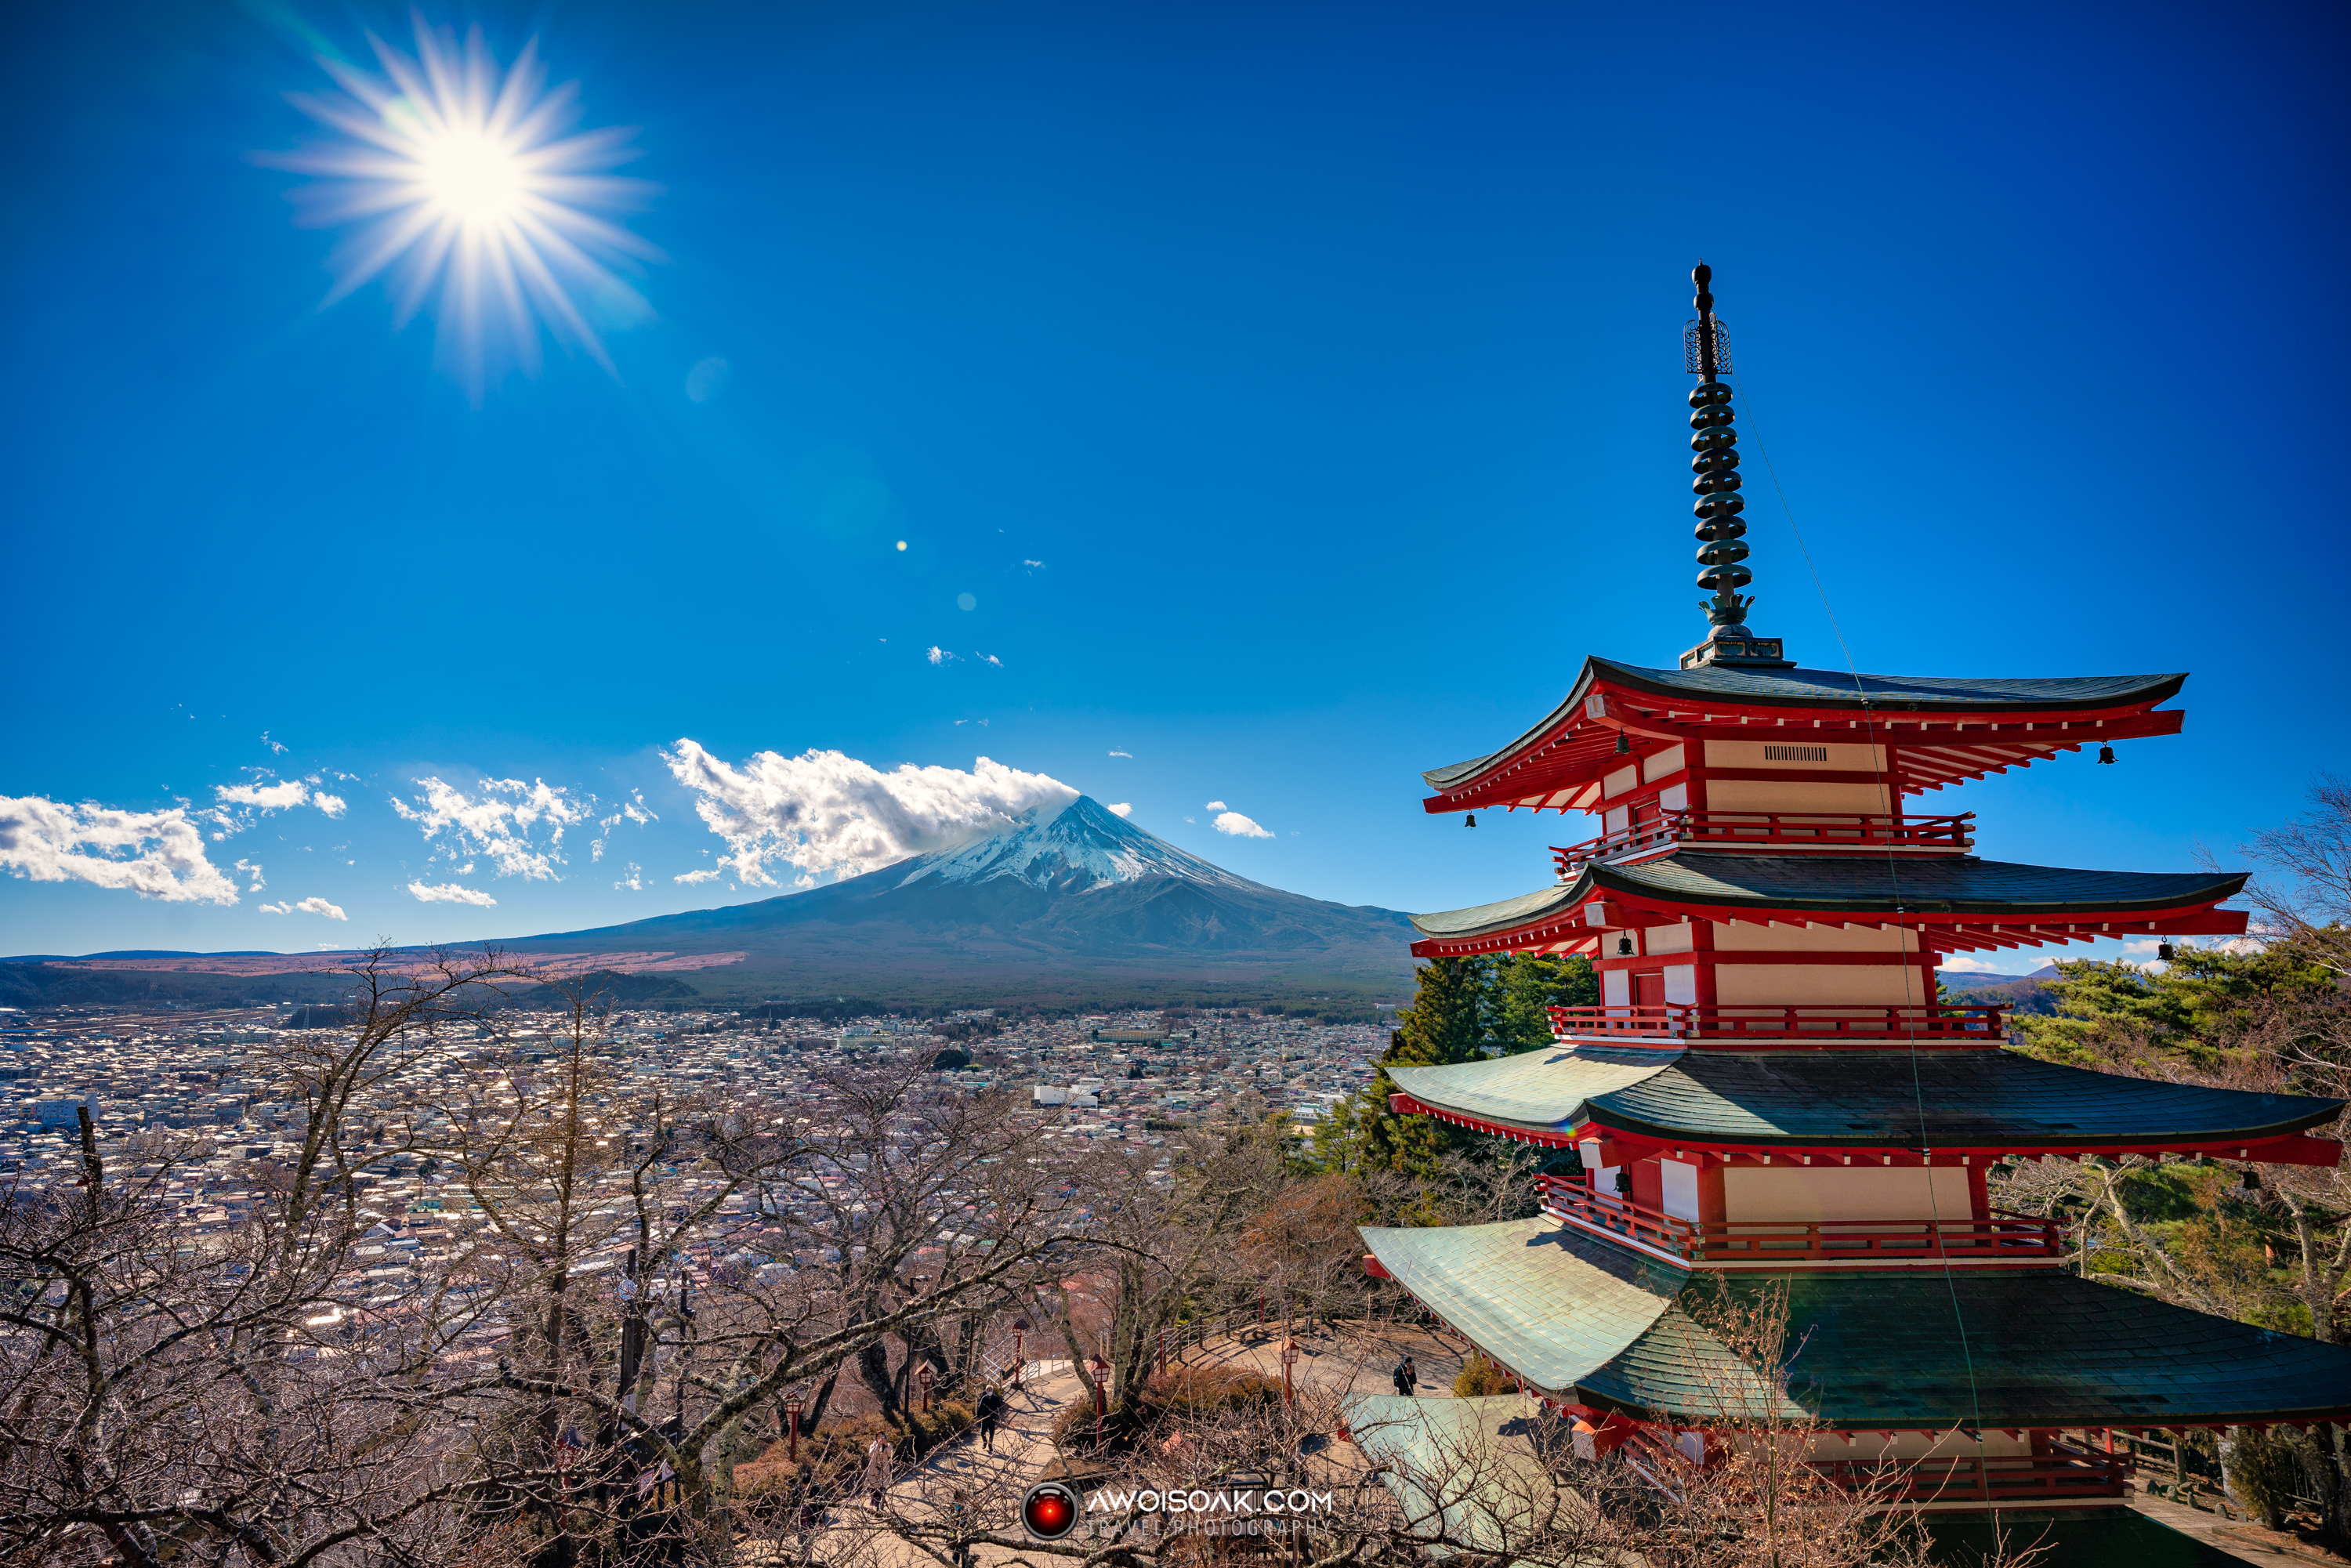 Mount Fuji from Chureito Pagoda